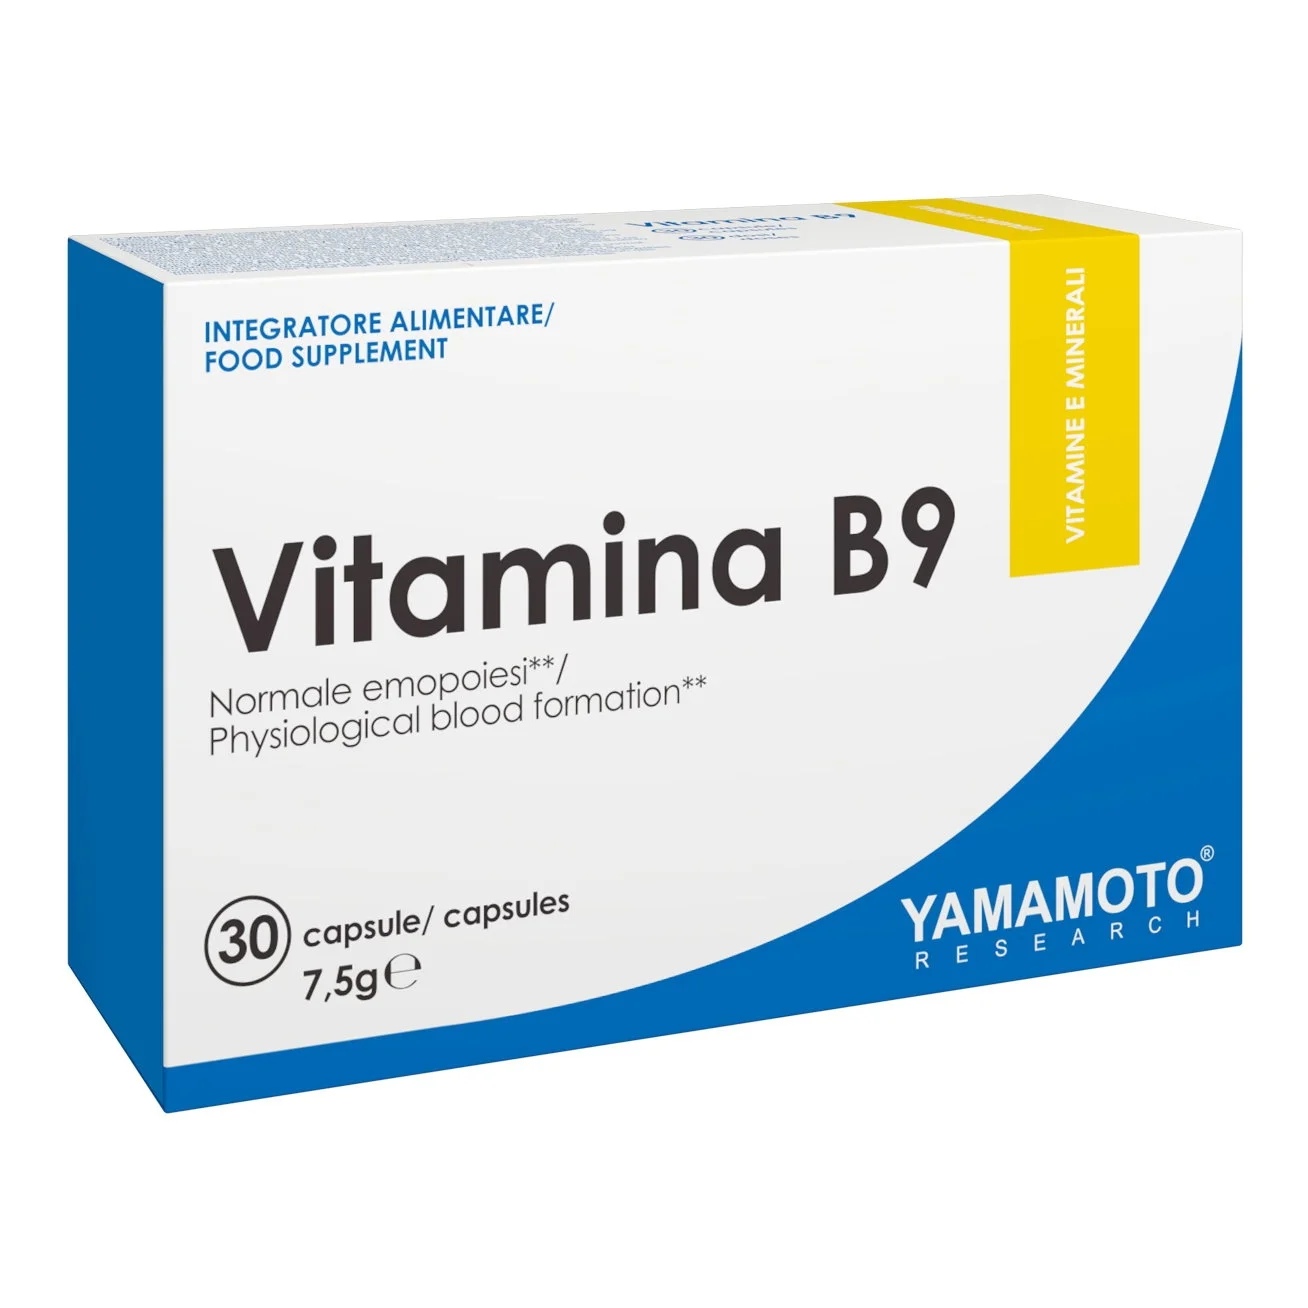 Yamamoto Natural Series Vitamina B9 / 30 capsules